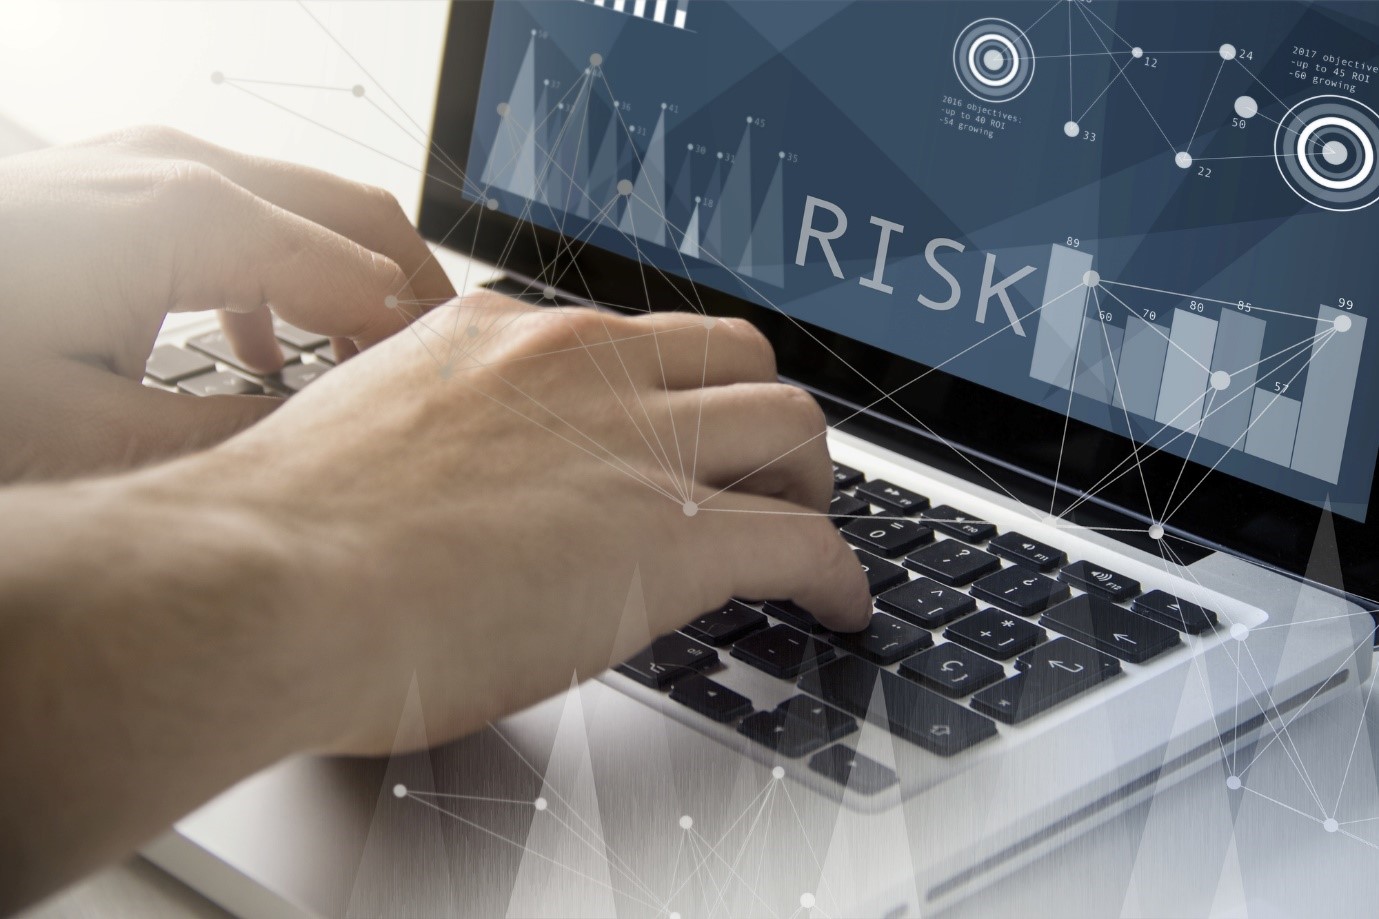 Risk Management Framework